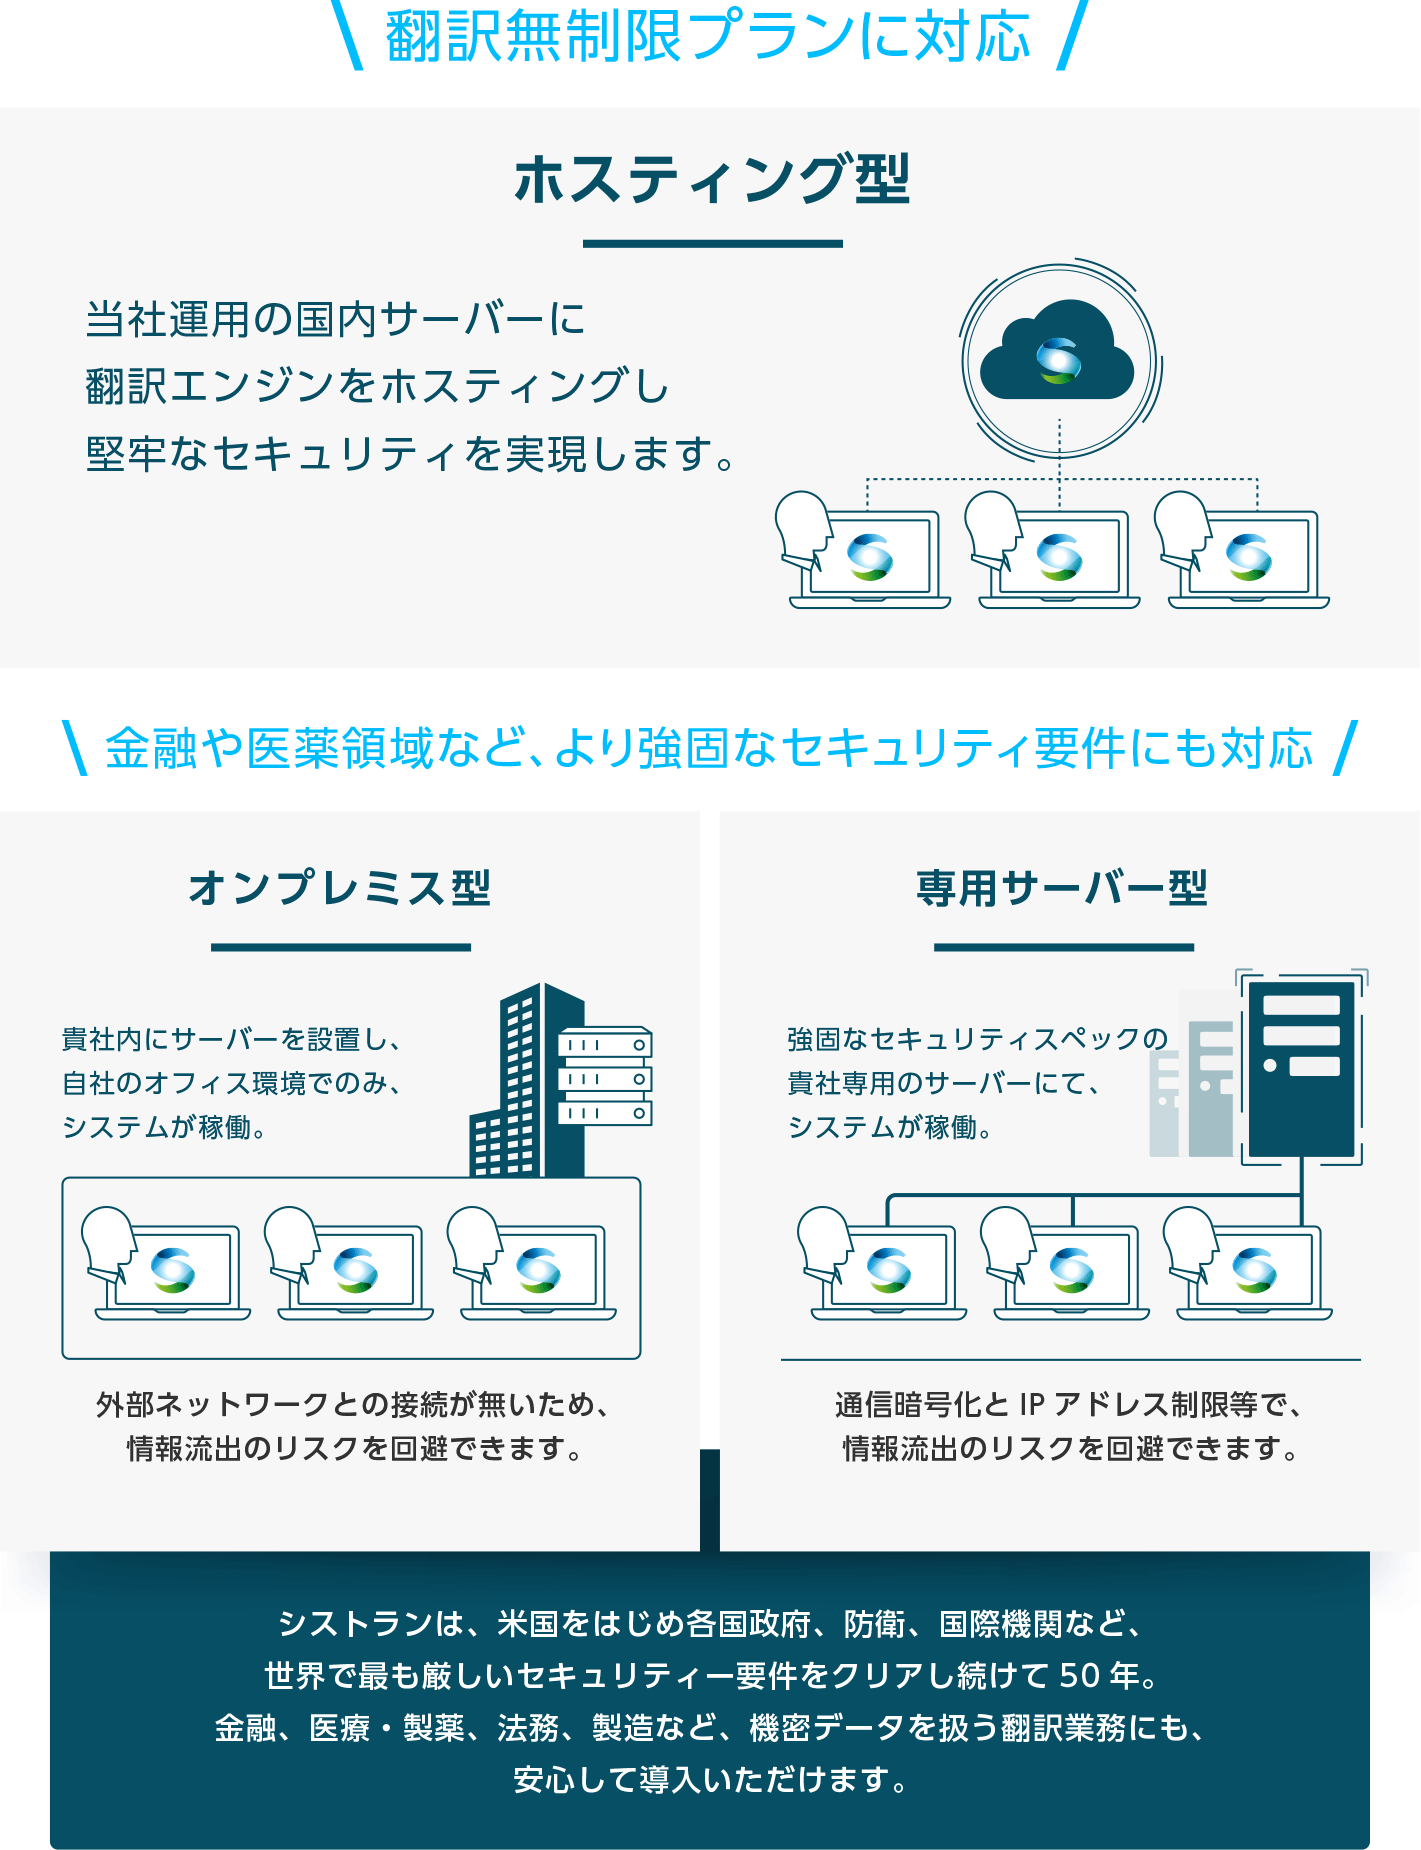 シストラン Systran 専門分野のai翻訳